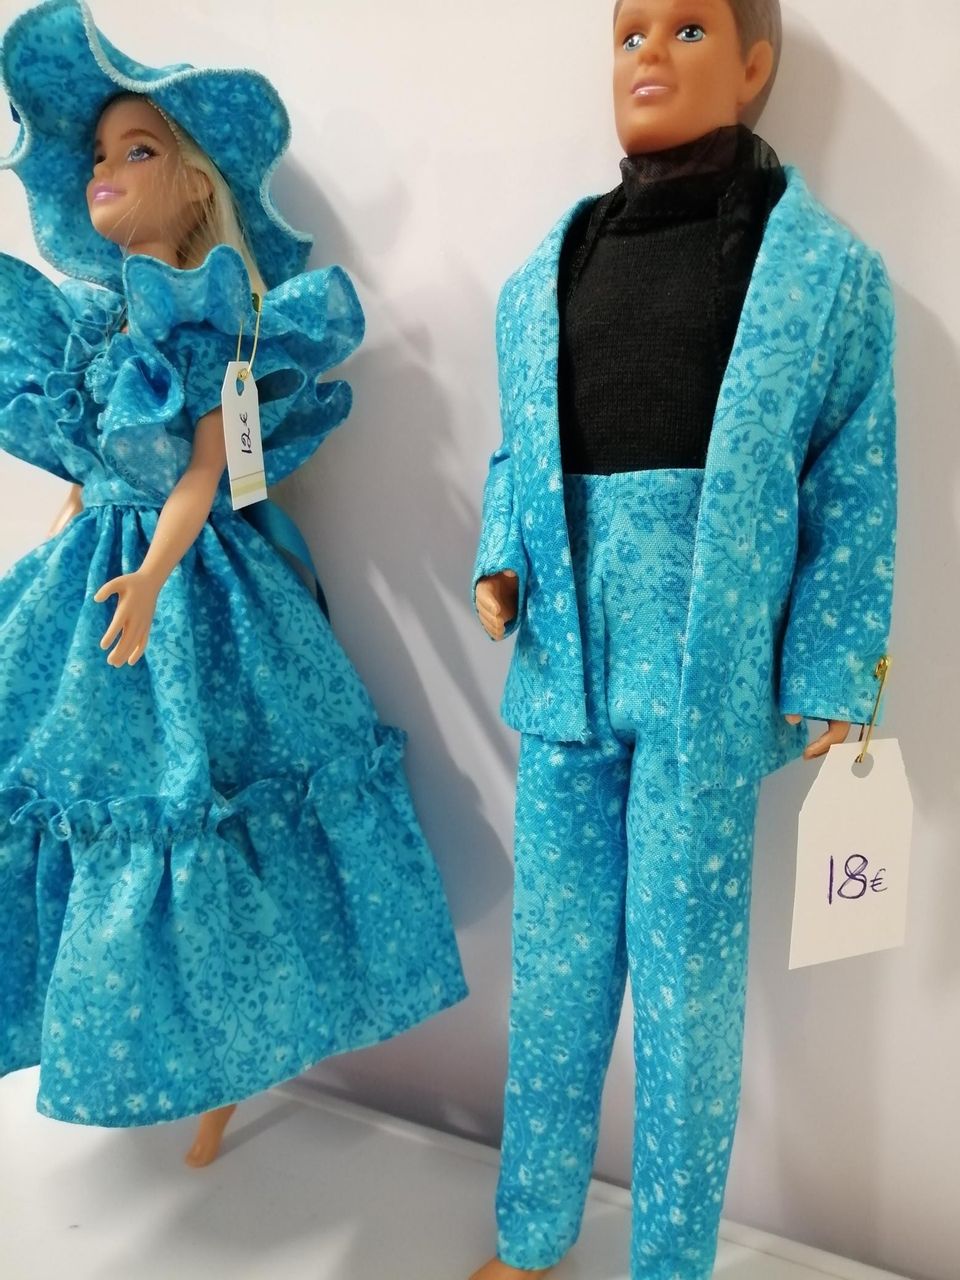 Barbie ja Ken vaatteineen uudet